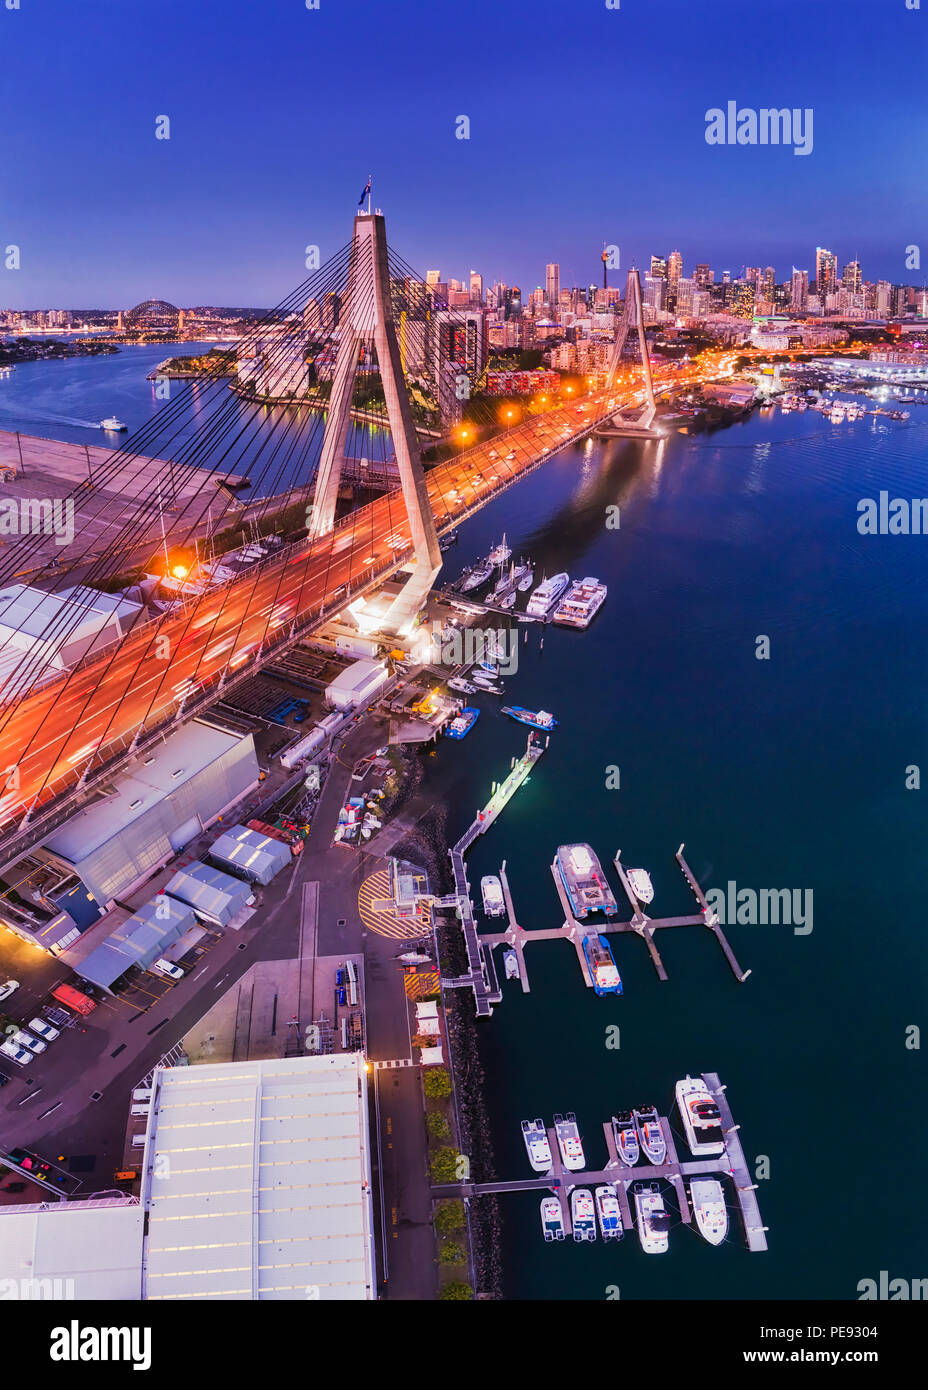 Stadt Sydney ANZAC Bridge am Hafen während der Blauen Stunde in Antenne erhöhten Blick auf City Marina in Richtung CBD Türme mit helle Beleuchtung. Stockfoto